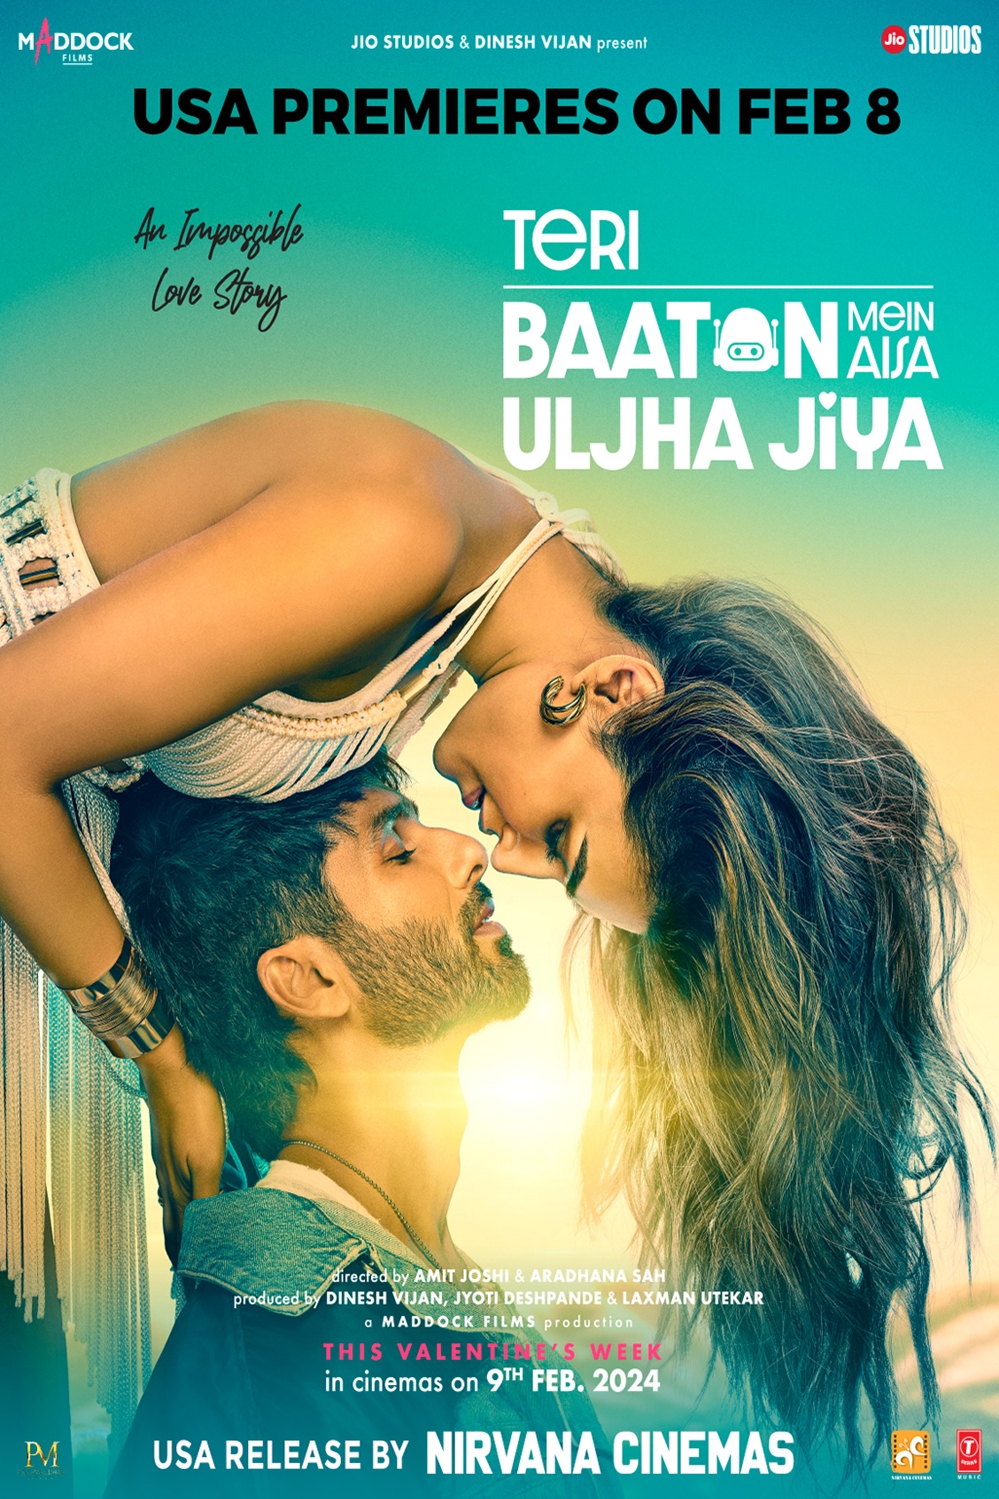 Teri Baaton Mein Aisa Uljha Jiya (Hindi) Poster